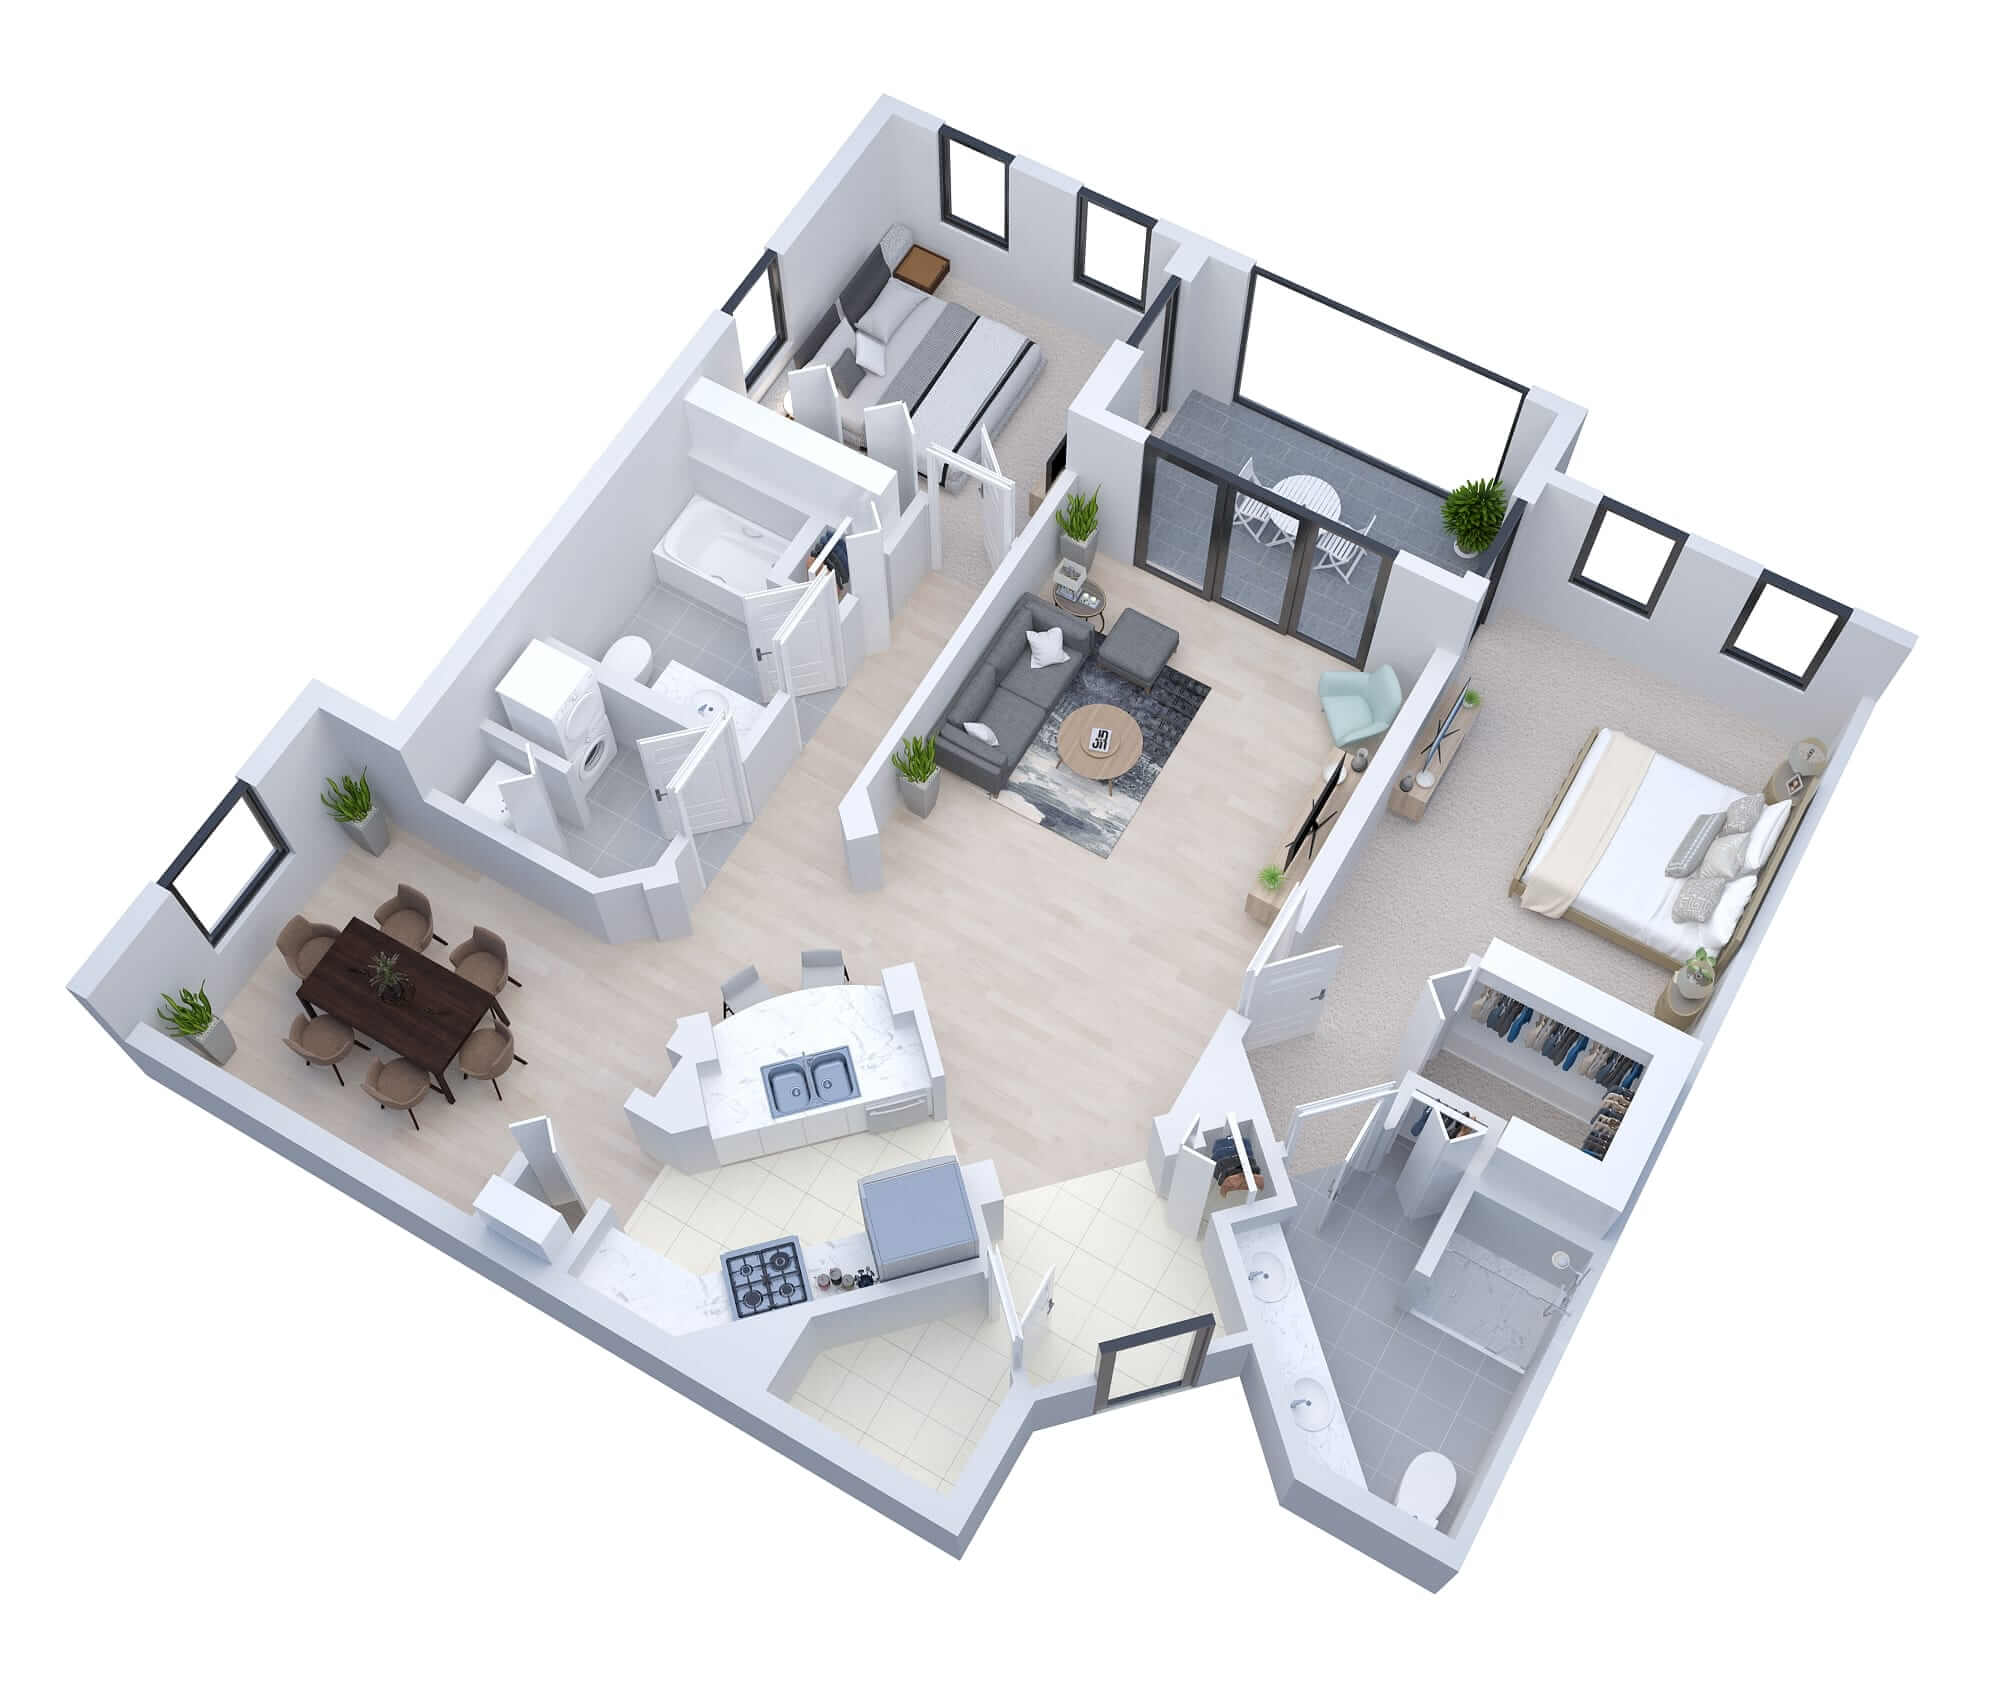 Kensigton - senior living floor plan